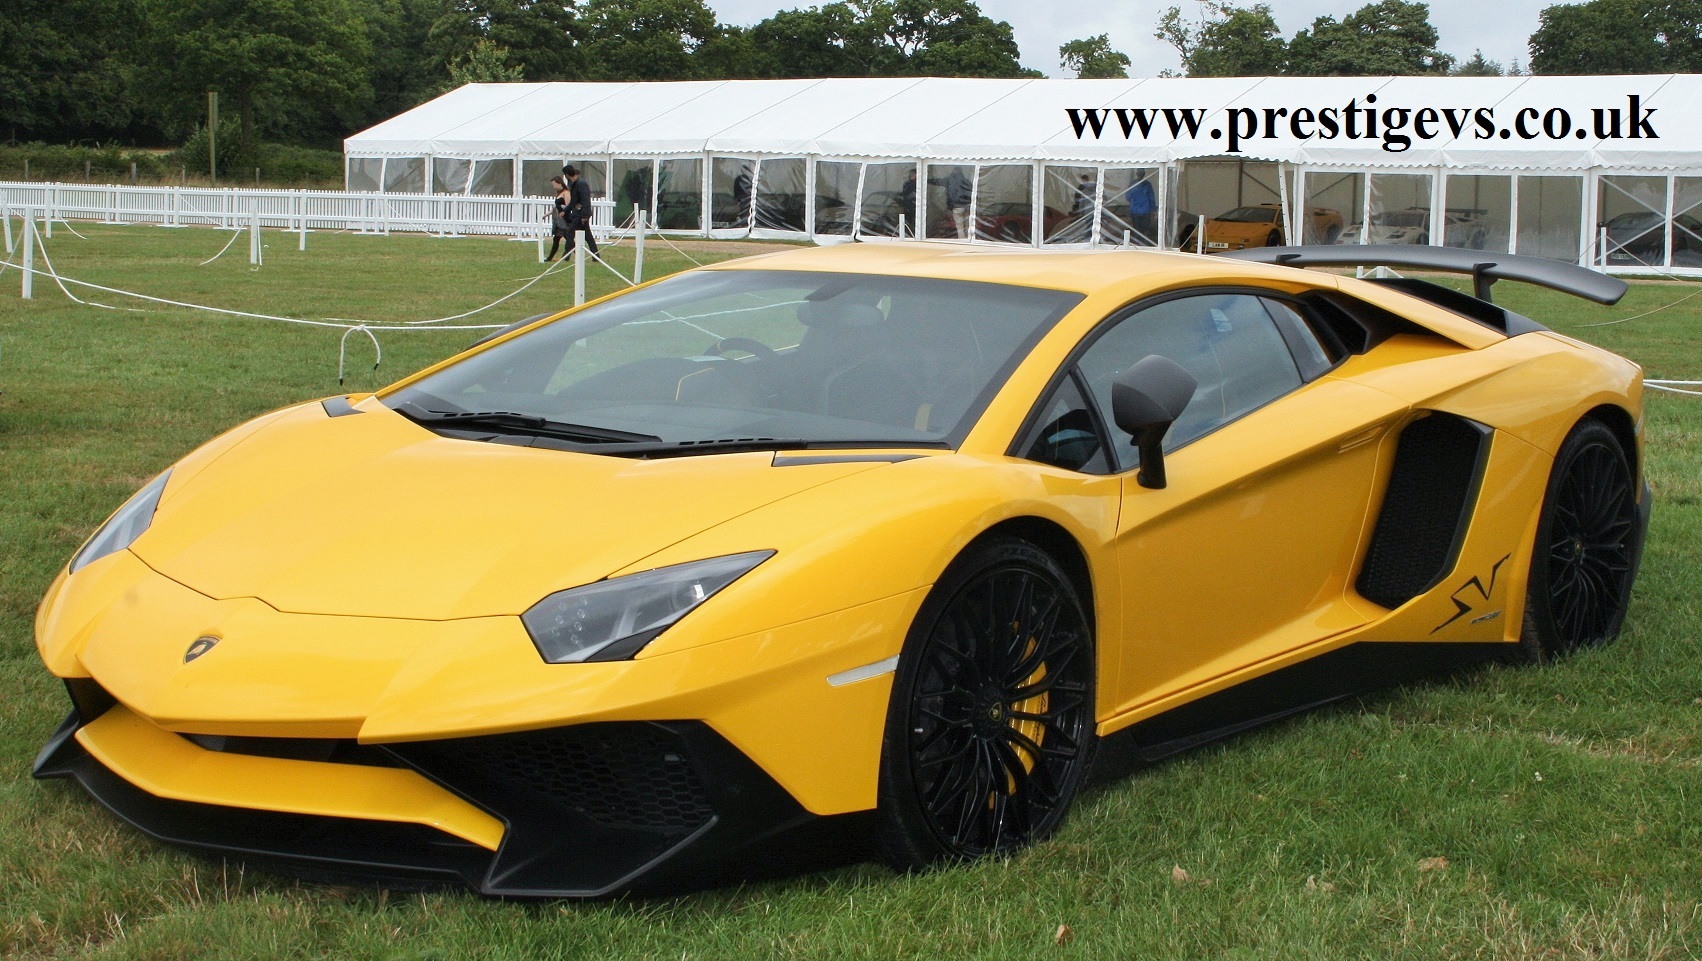 Lamborghini Prestigevs.co.uk